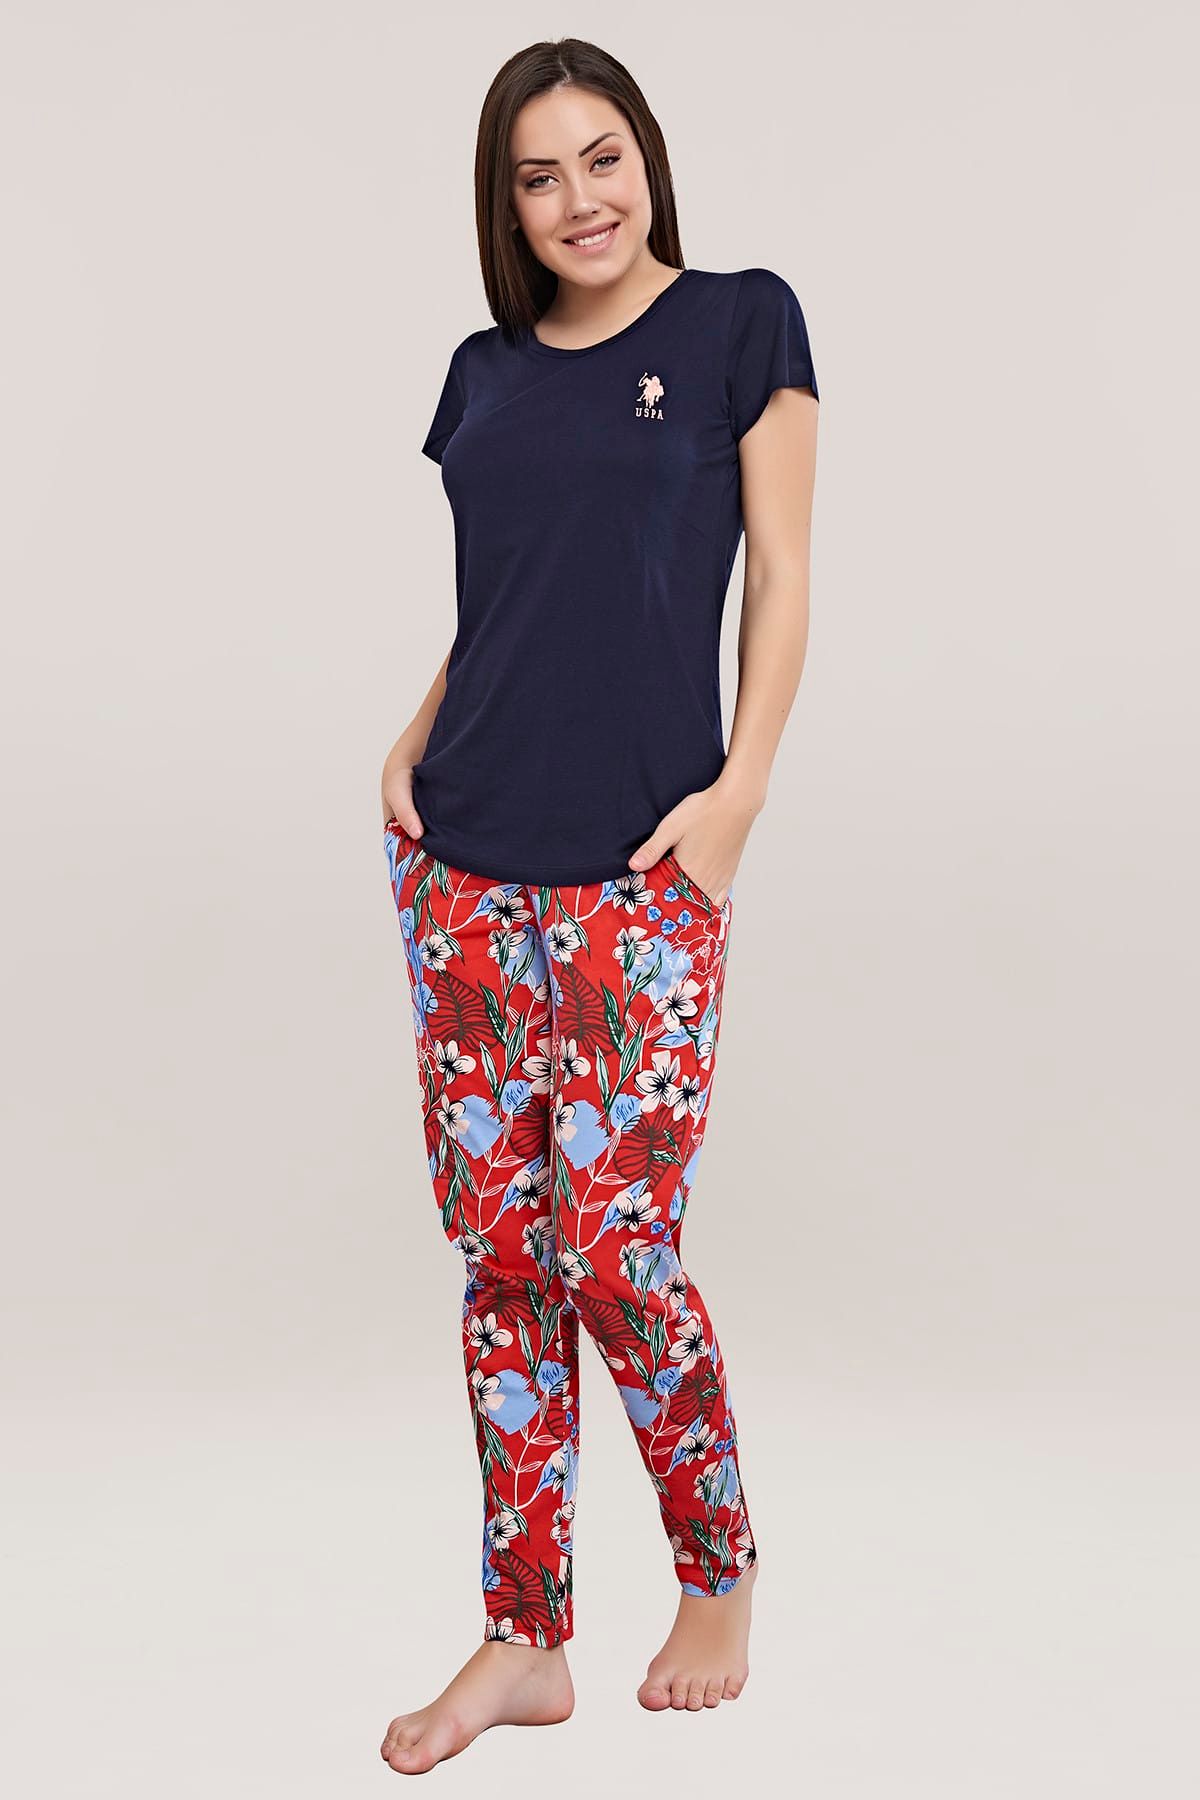 U.S. Polo Assn. Kadın Lacivert Yuvarlak Yaka Pijama Takım